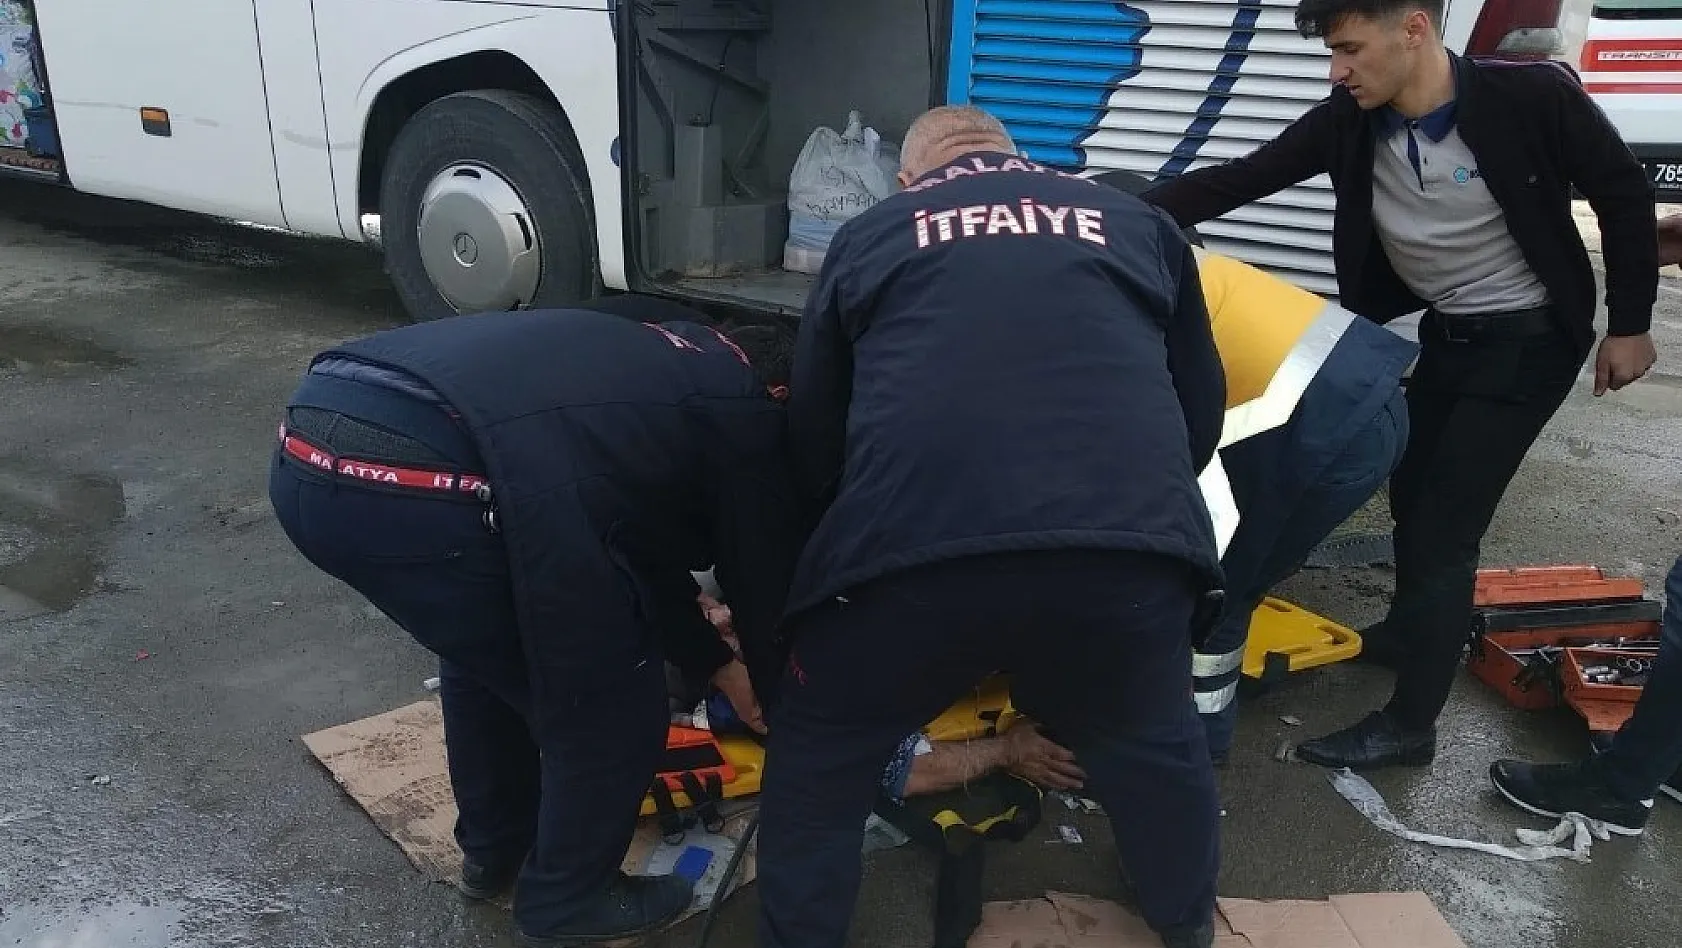 Tamir sırasında krikolar kaydı, 3 kişi otobüsün altında kaldı 